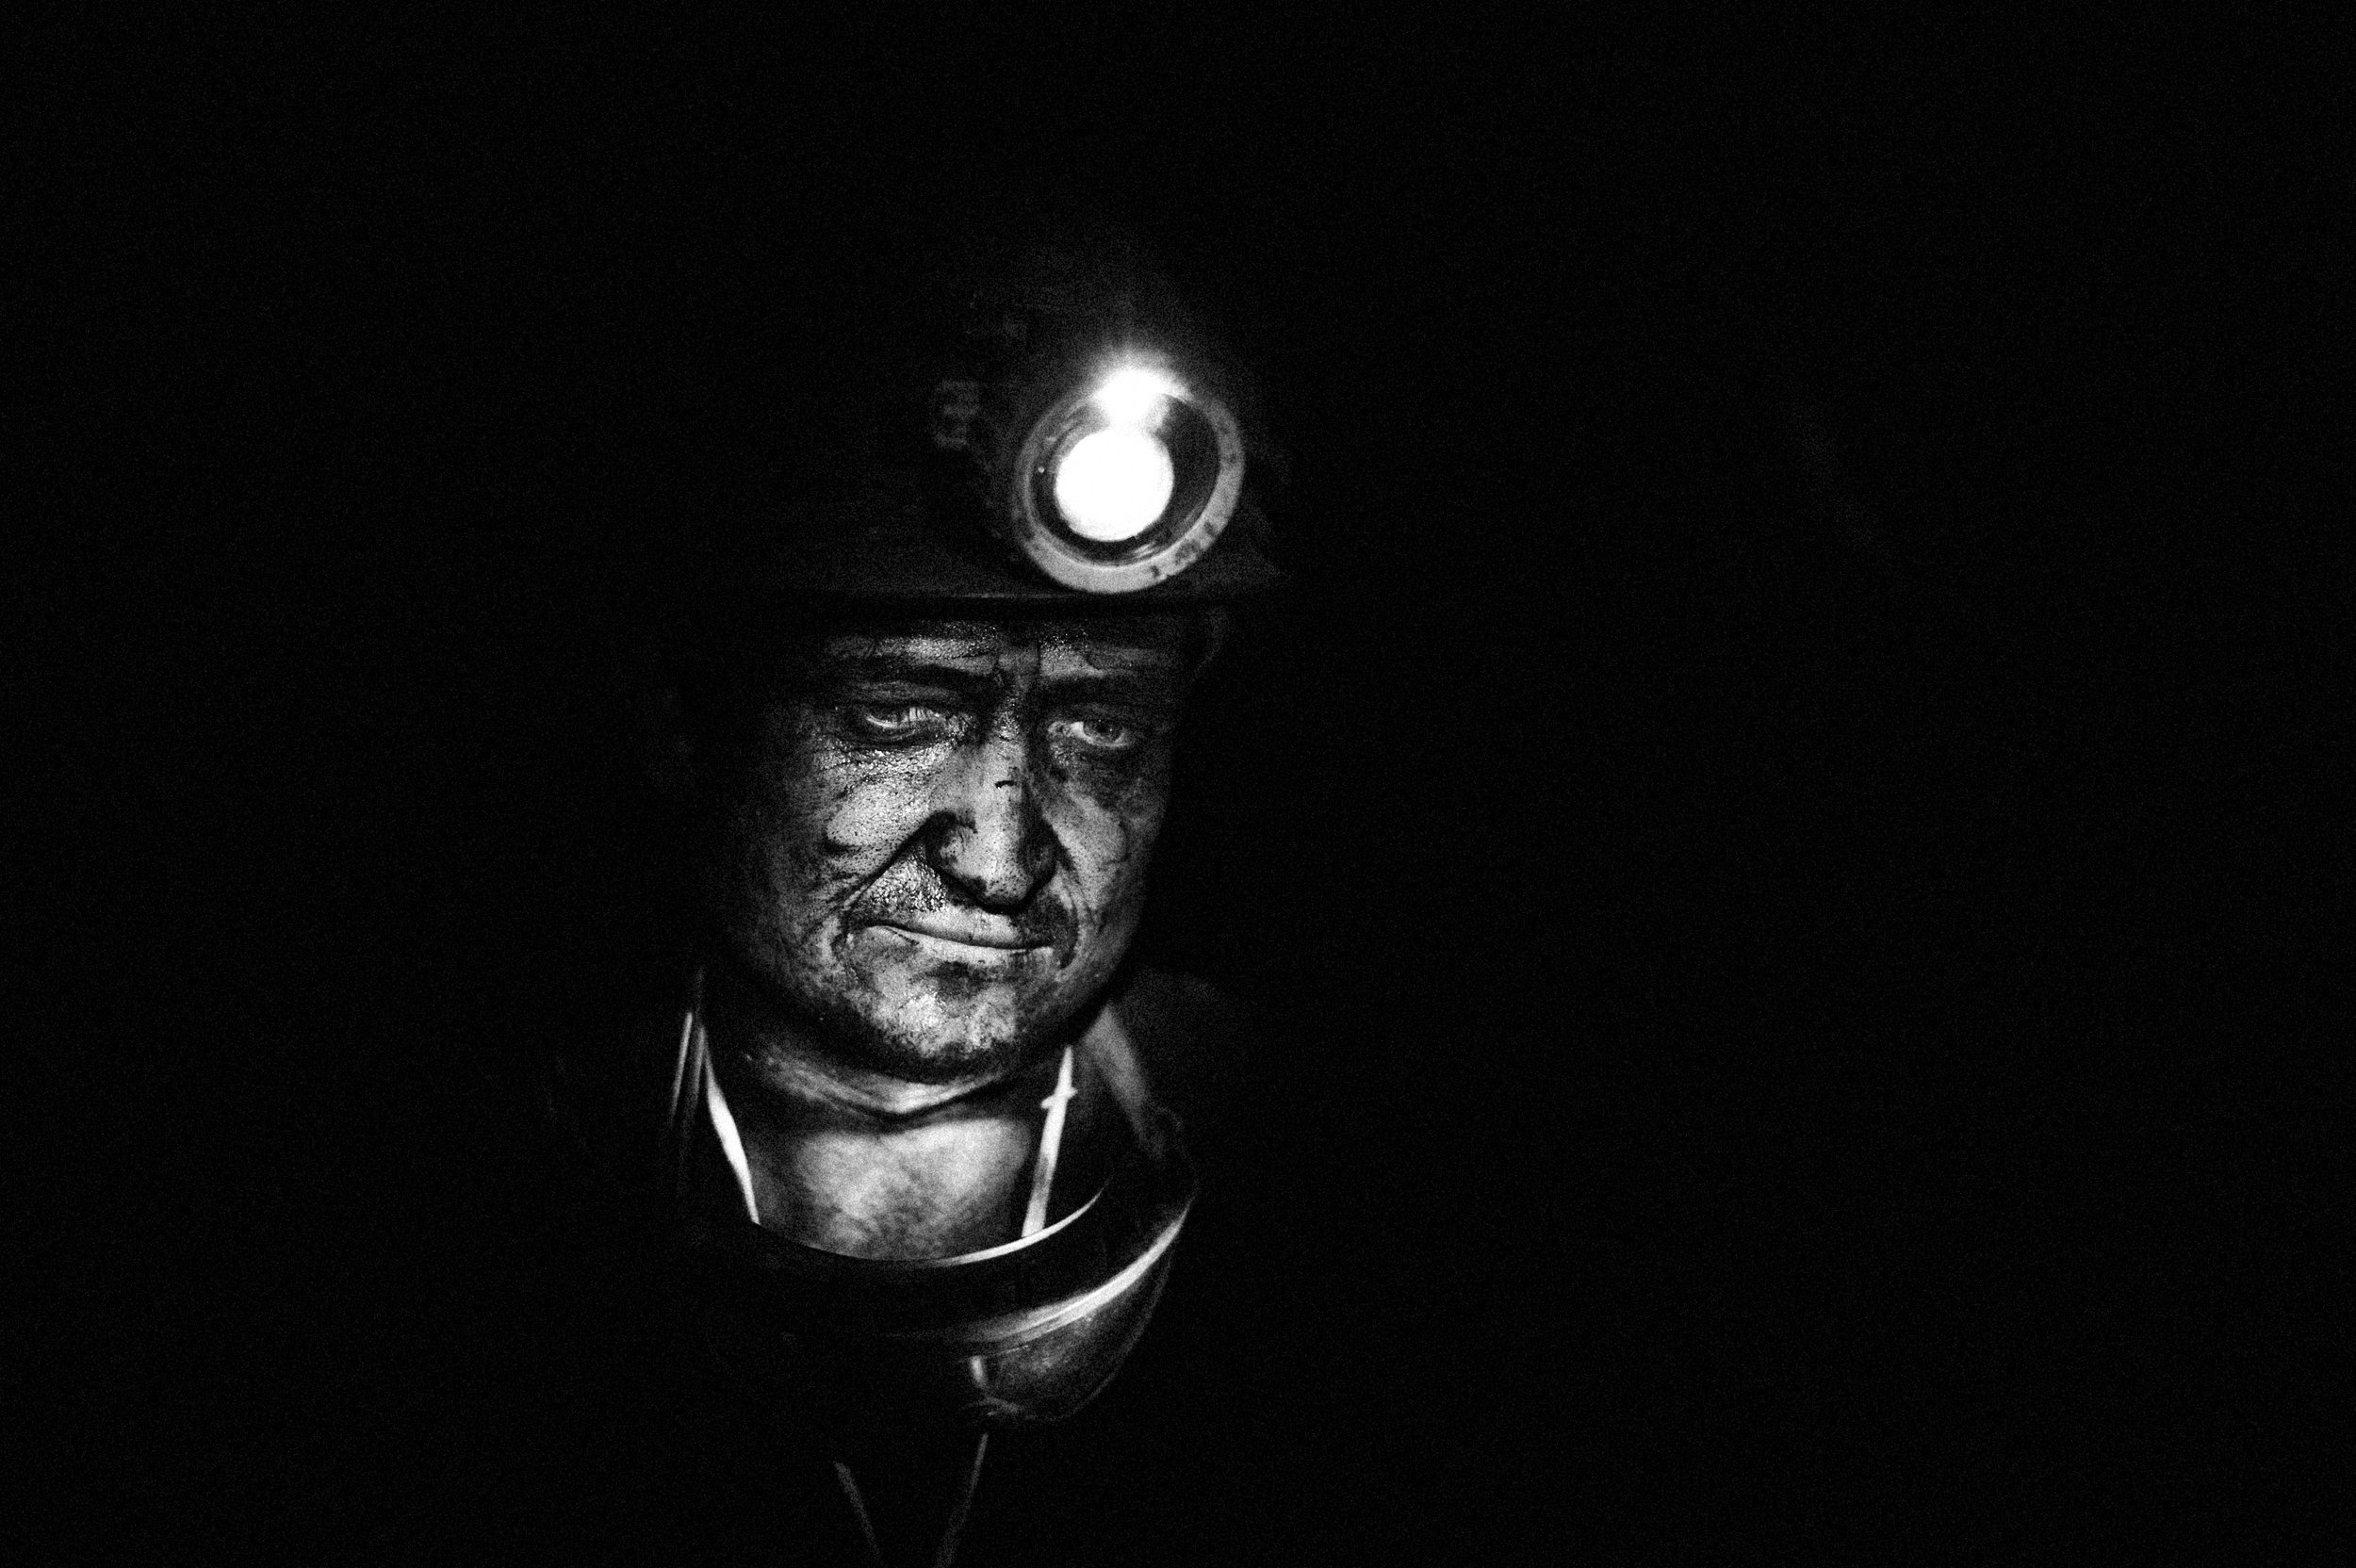 Poland, September 2009 - Coal miner. © Pep Bonet